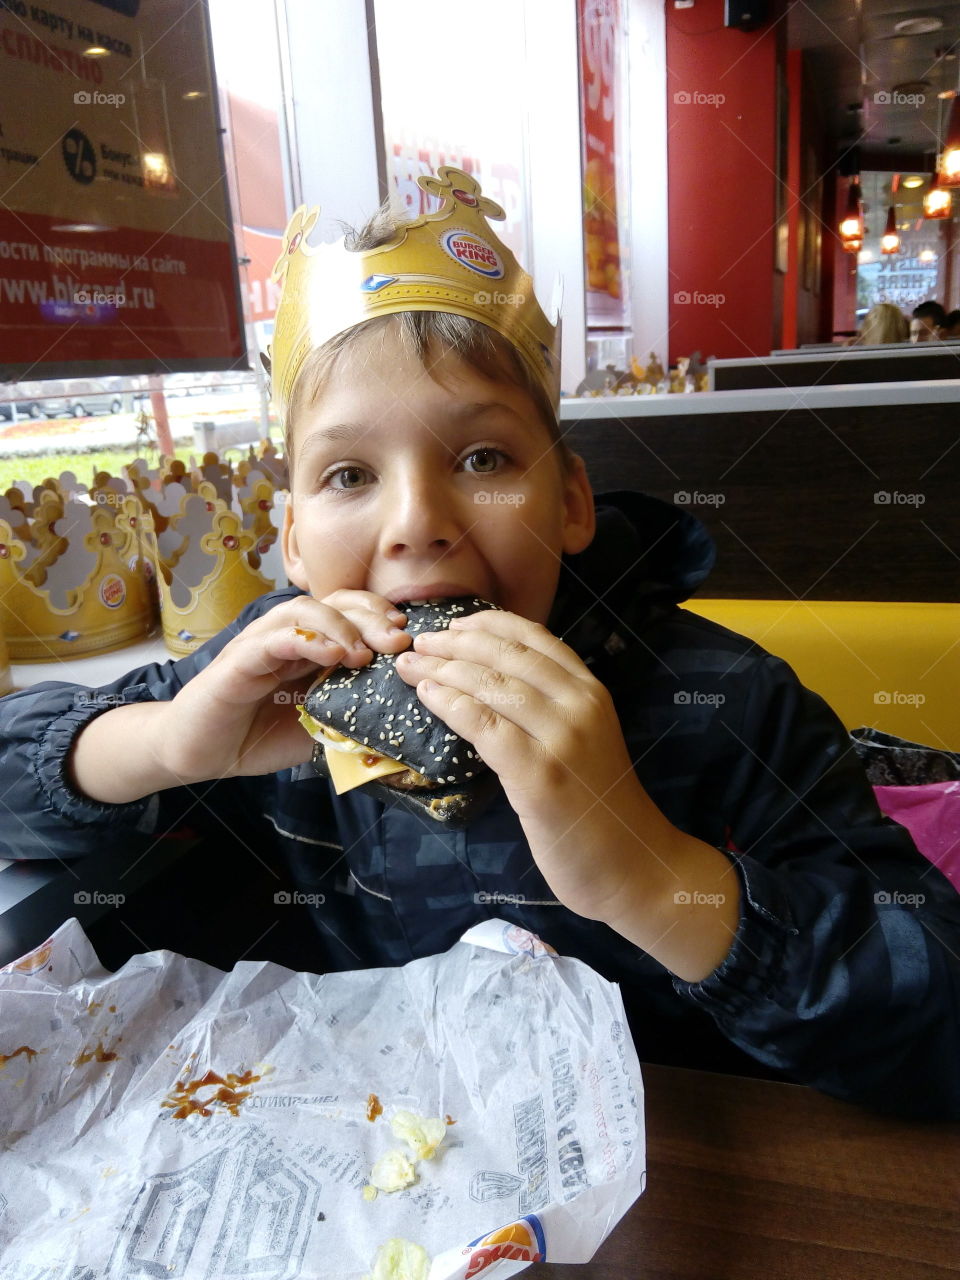 A child eats his favorite burger